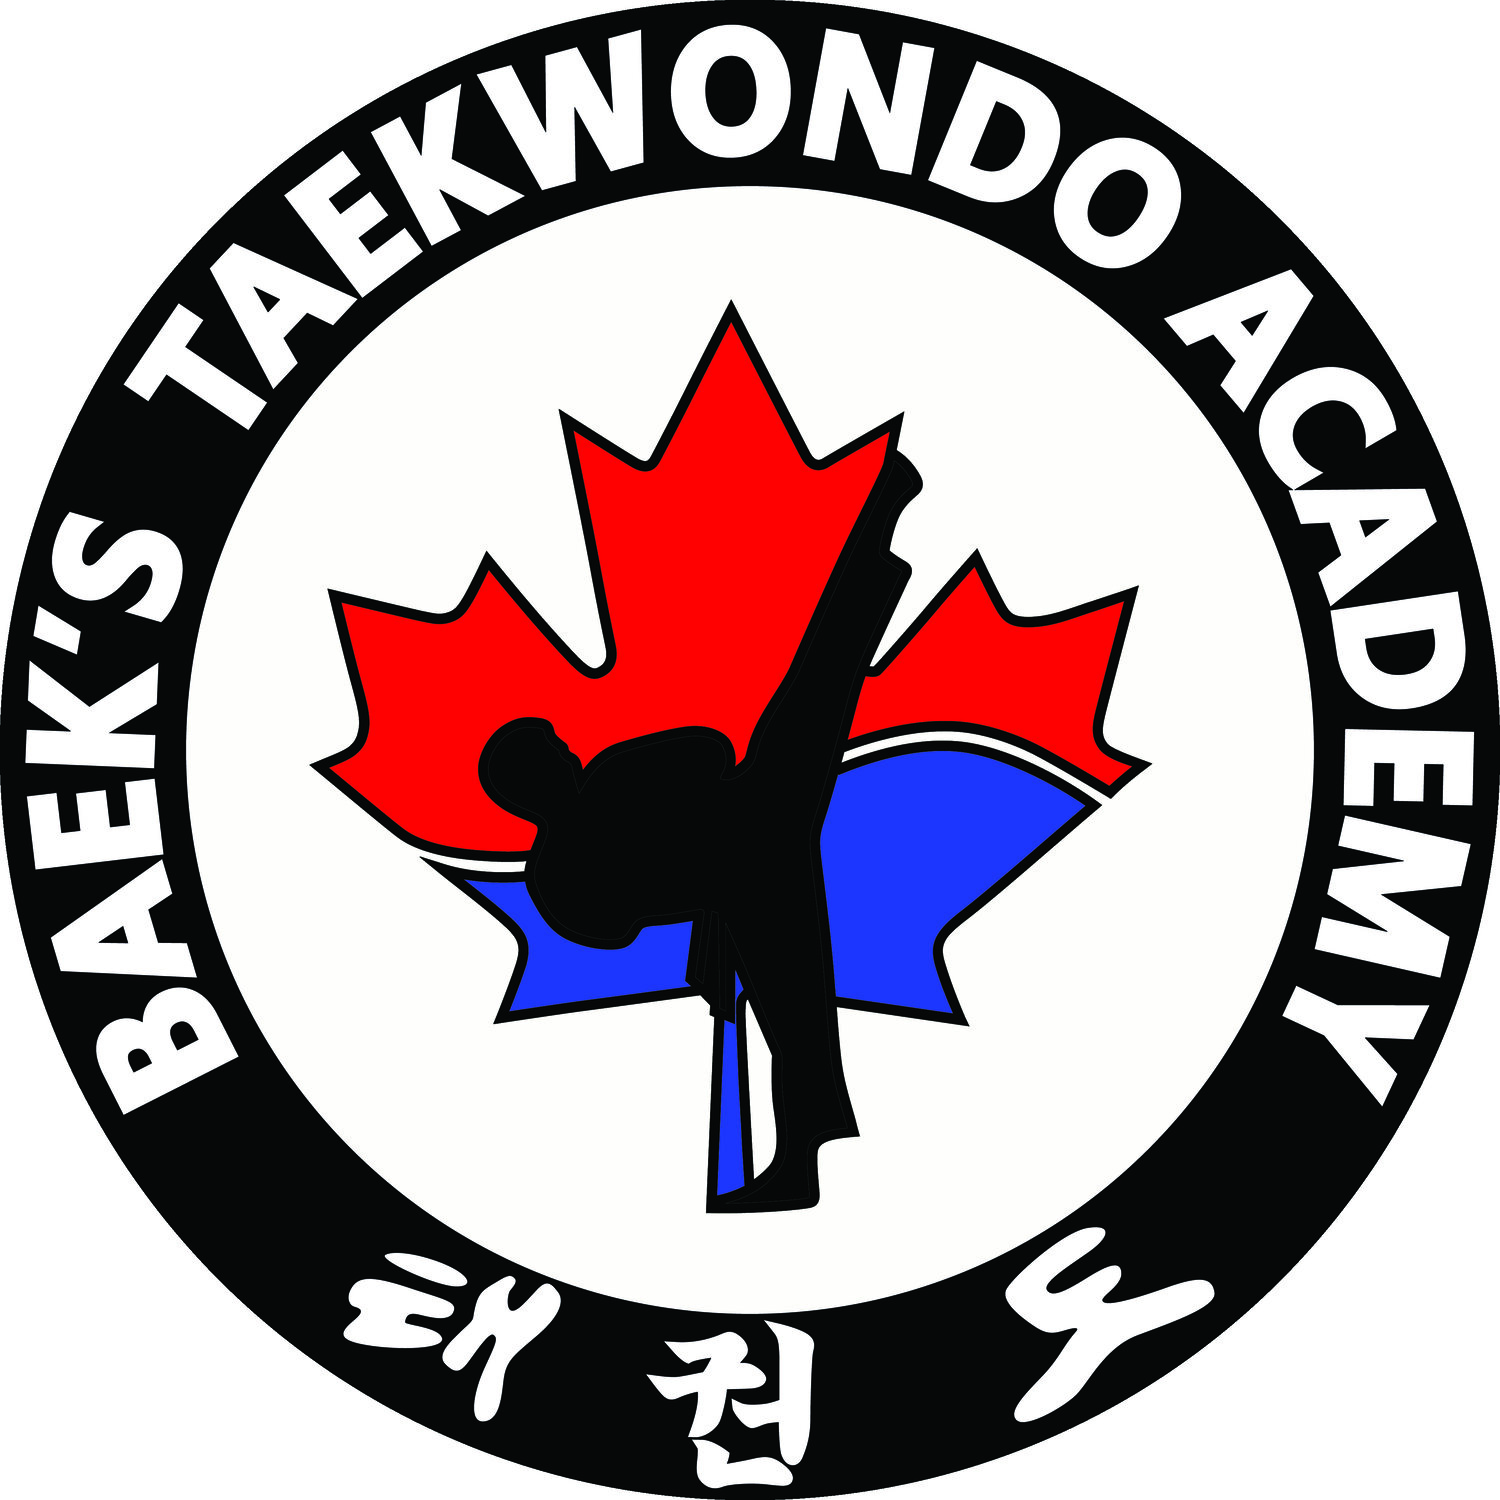 Baek's Tae Kwon Do Academy